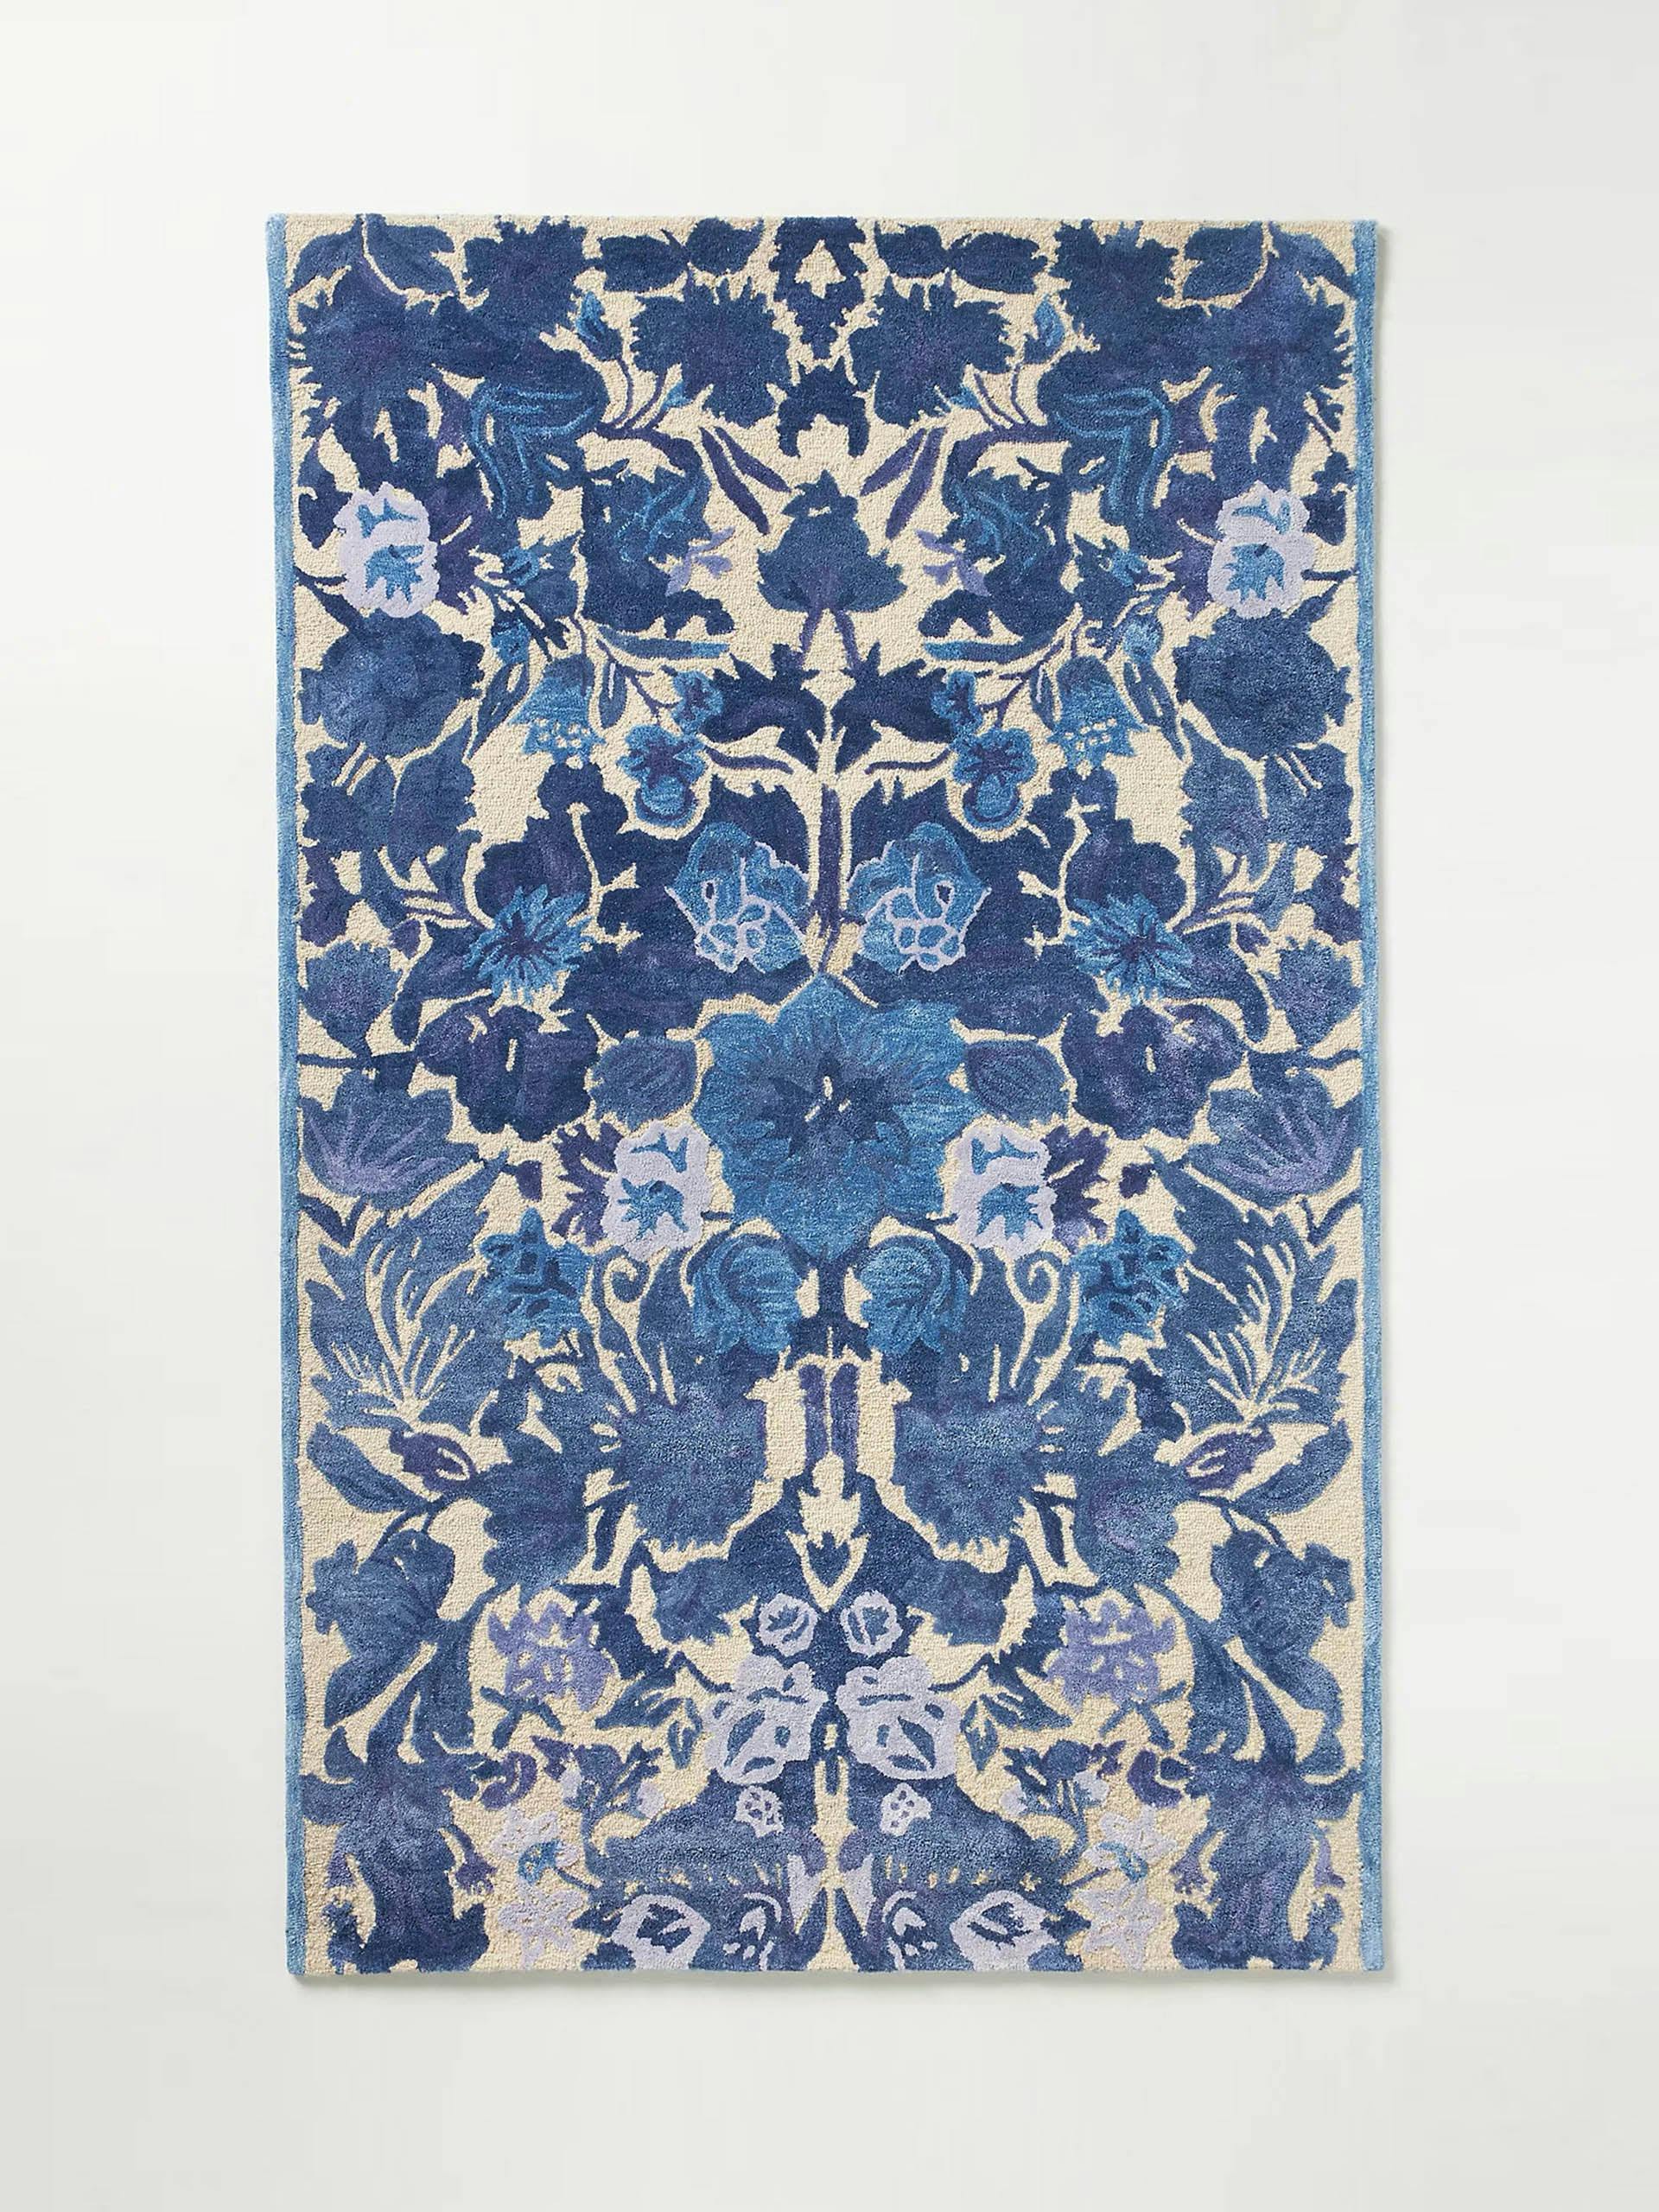 Hand-tufted blue floral rug